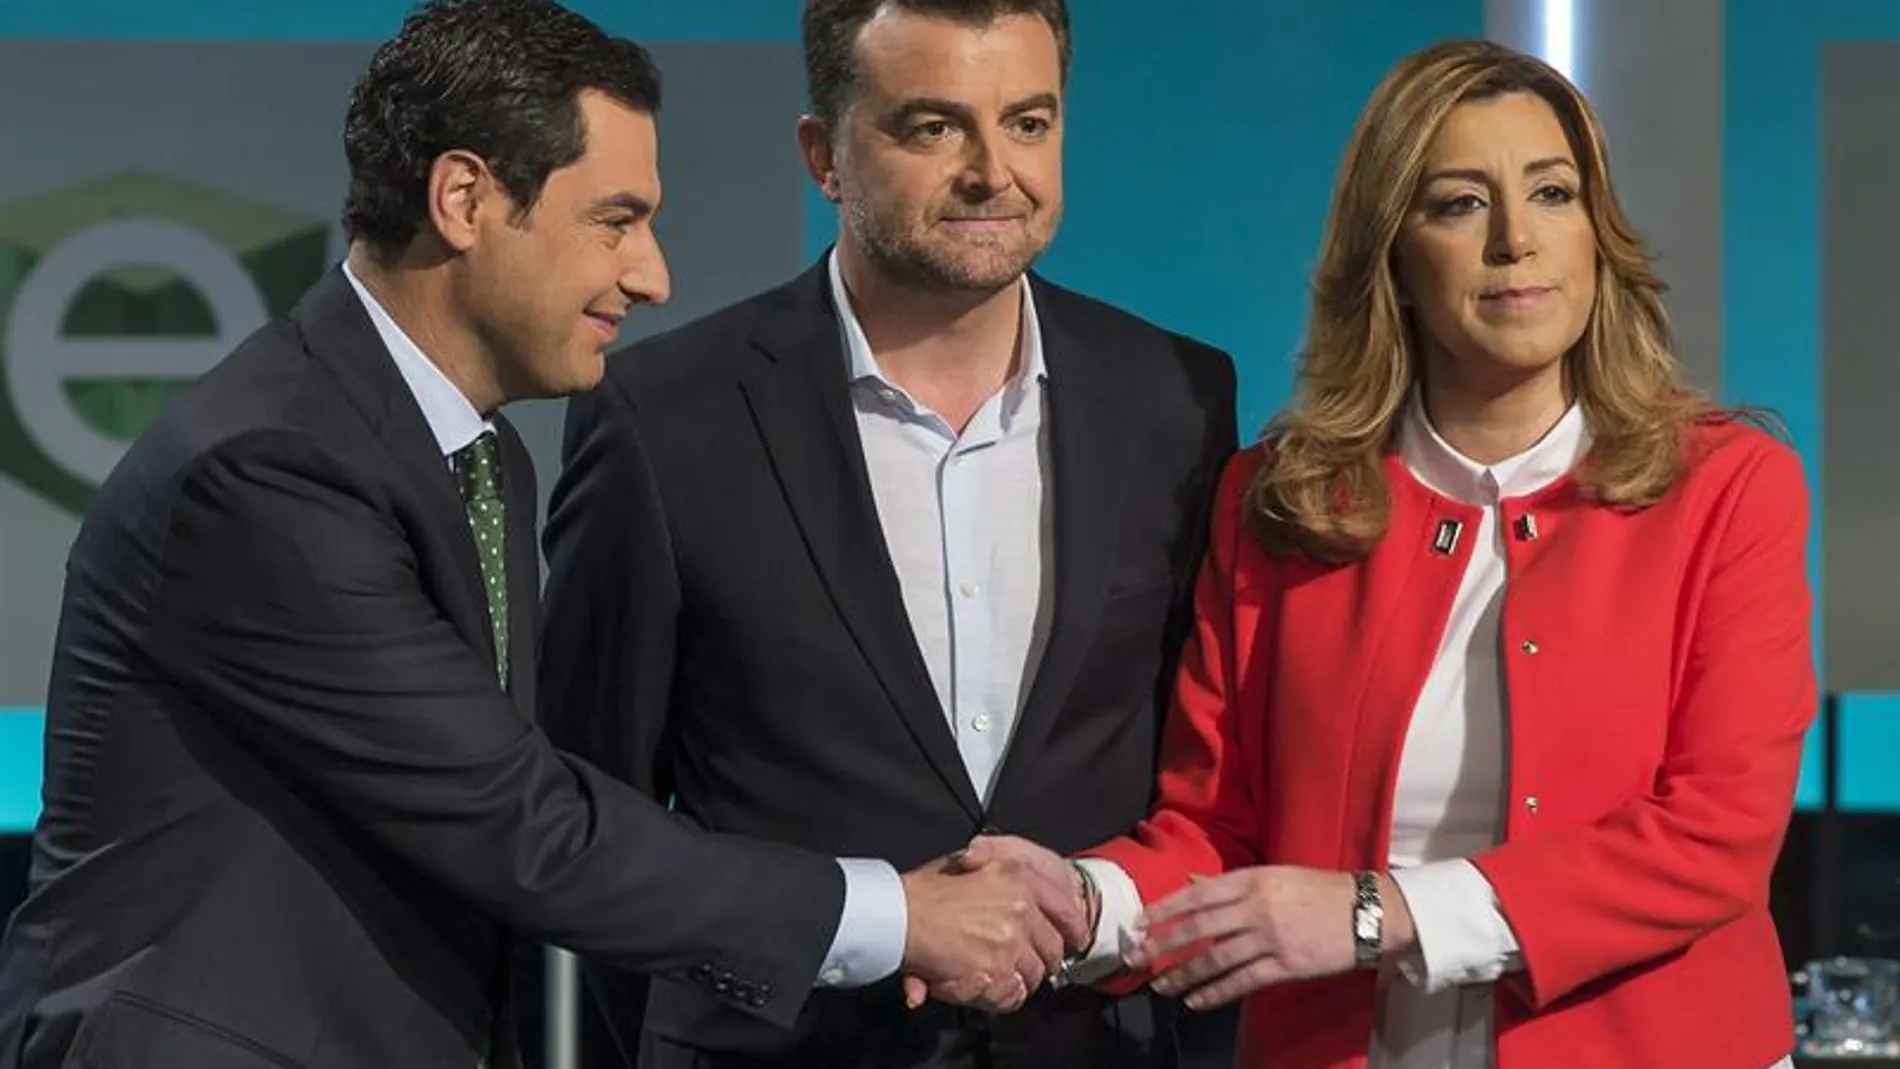  Juanma Moreno, del PP; Antonio Maíllo, de IU, y Susana Díaz, del PSOE